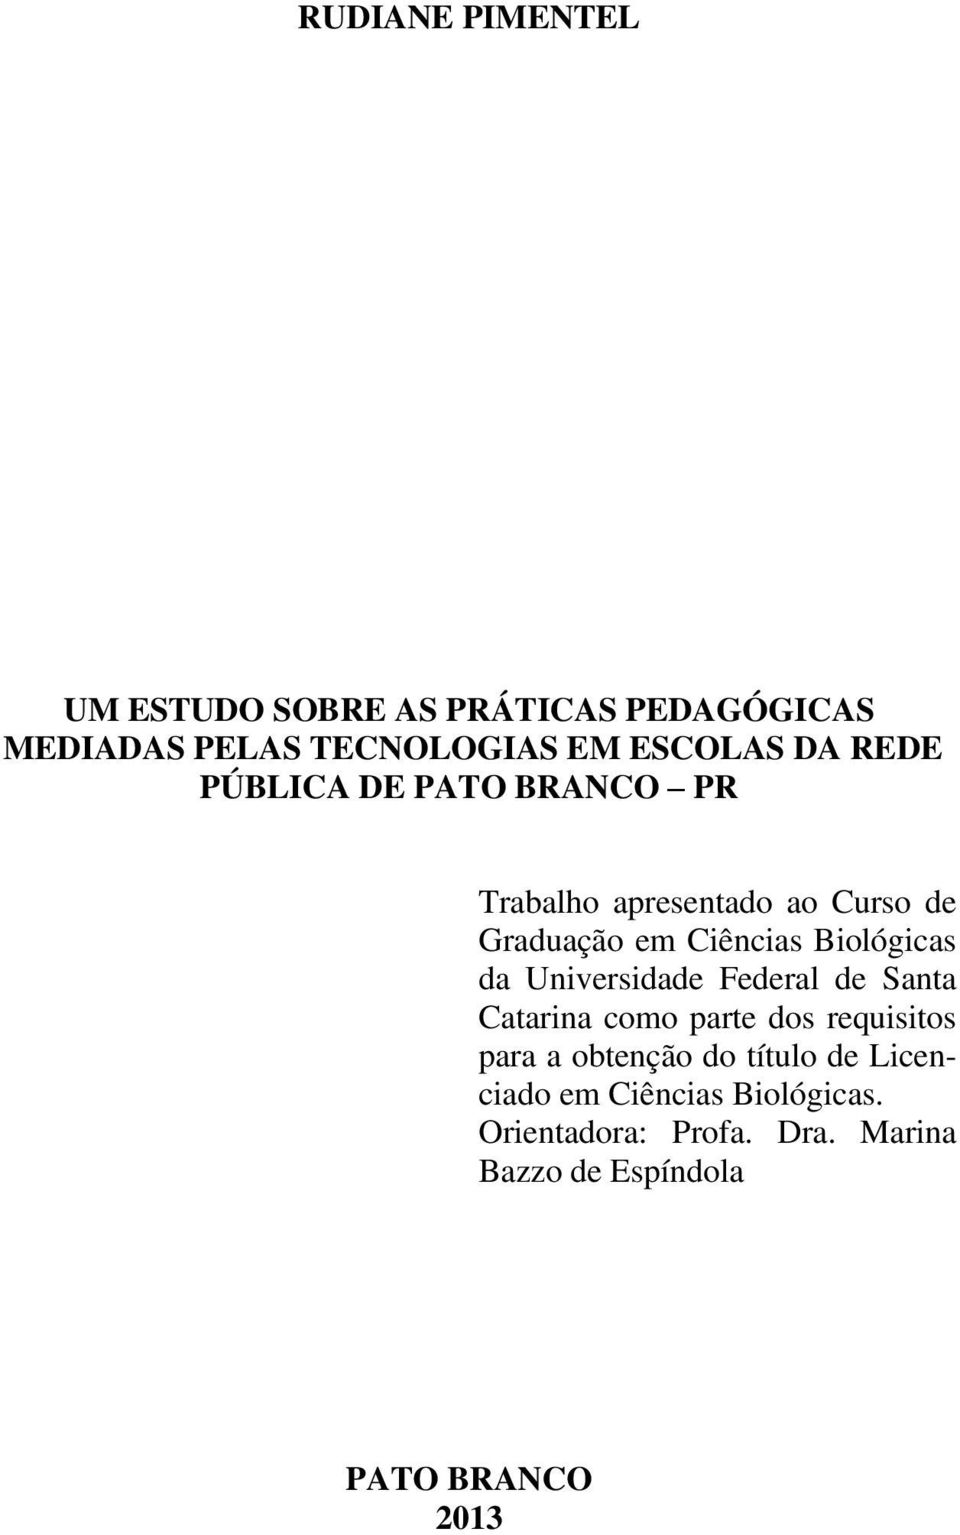 Biológicas da Universidade Federal de Santa Catarina como parte dos requisitos para a obtenção do